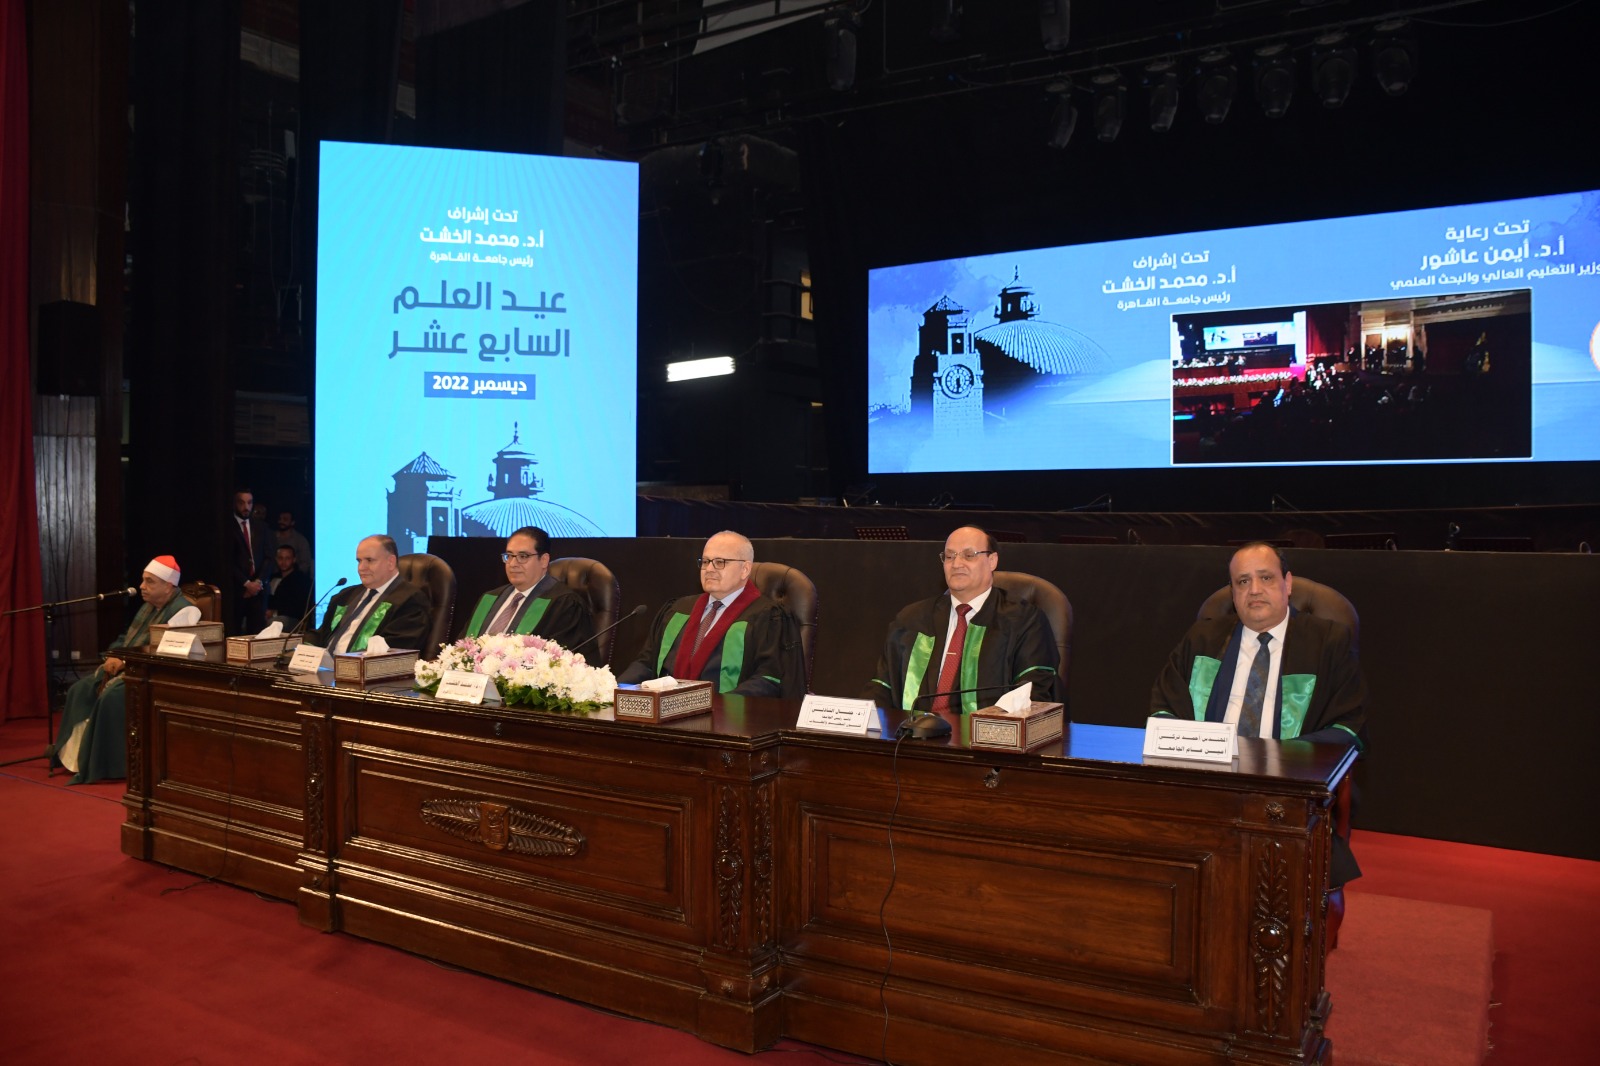 رئيس جامعة القاهرة يستعرض الإنجازات والأنشطة والفعاليات خلال الفصل الدراسي الأول